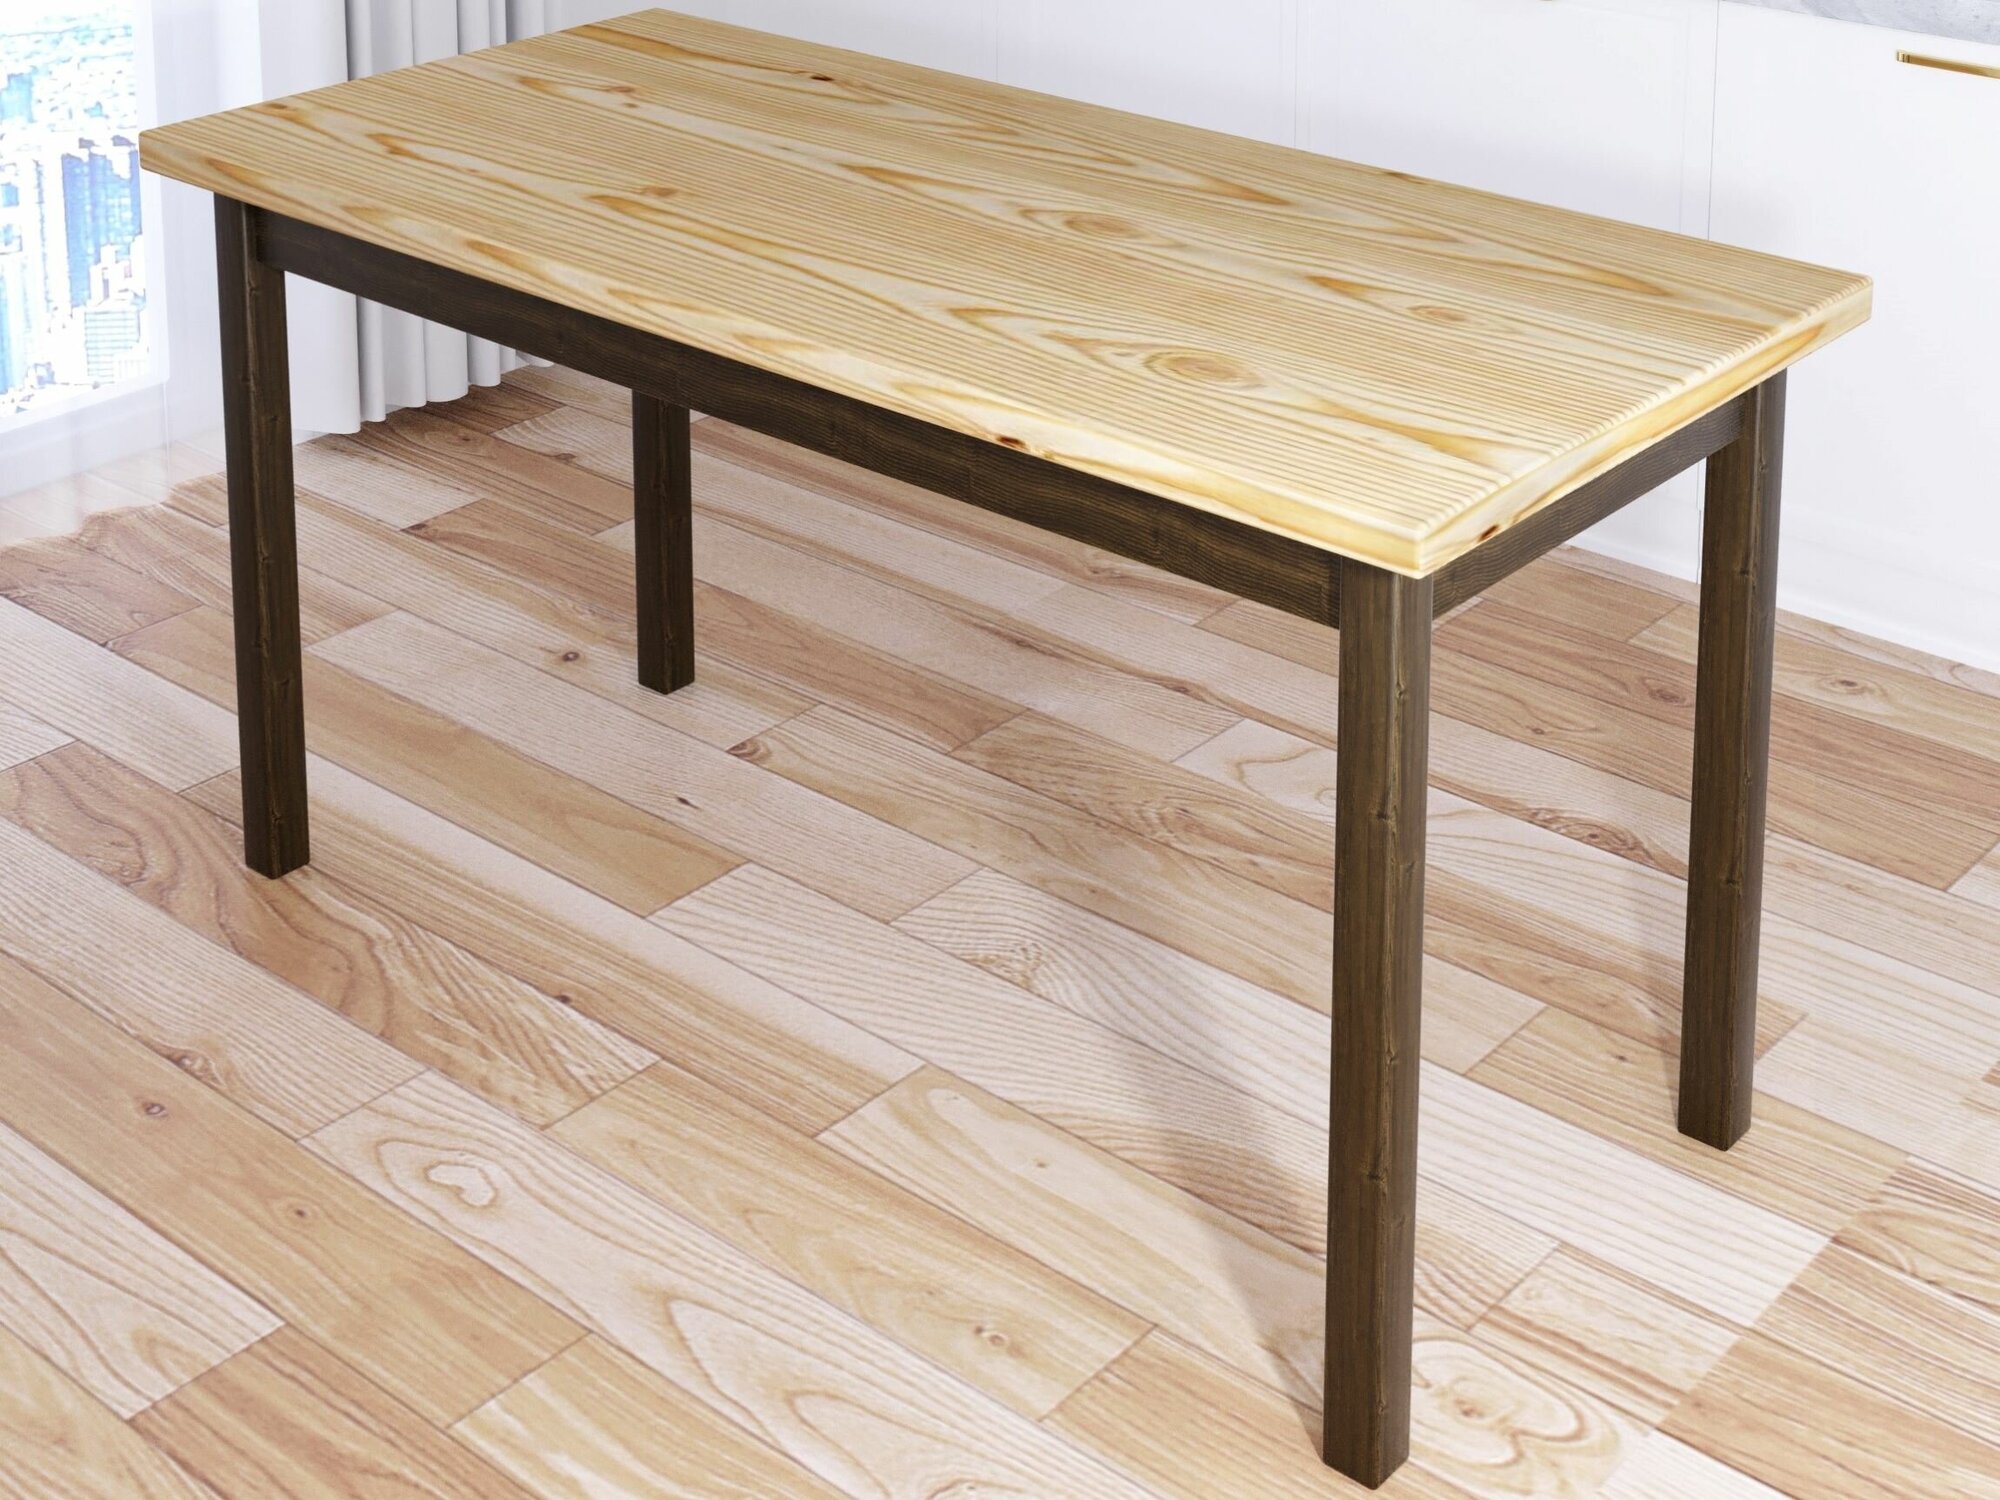 Стол кухонный Классика из массива сосны, лакированная столешница 40 мм и ножки цвета темного дуба, 140х80х75 см